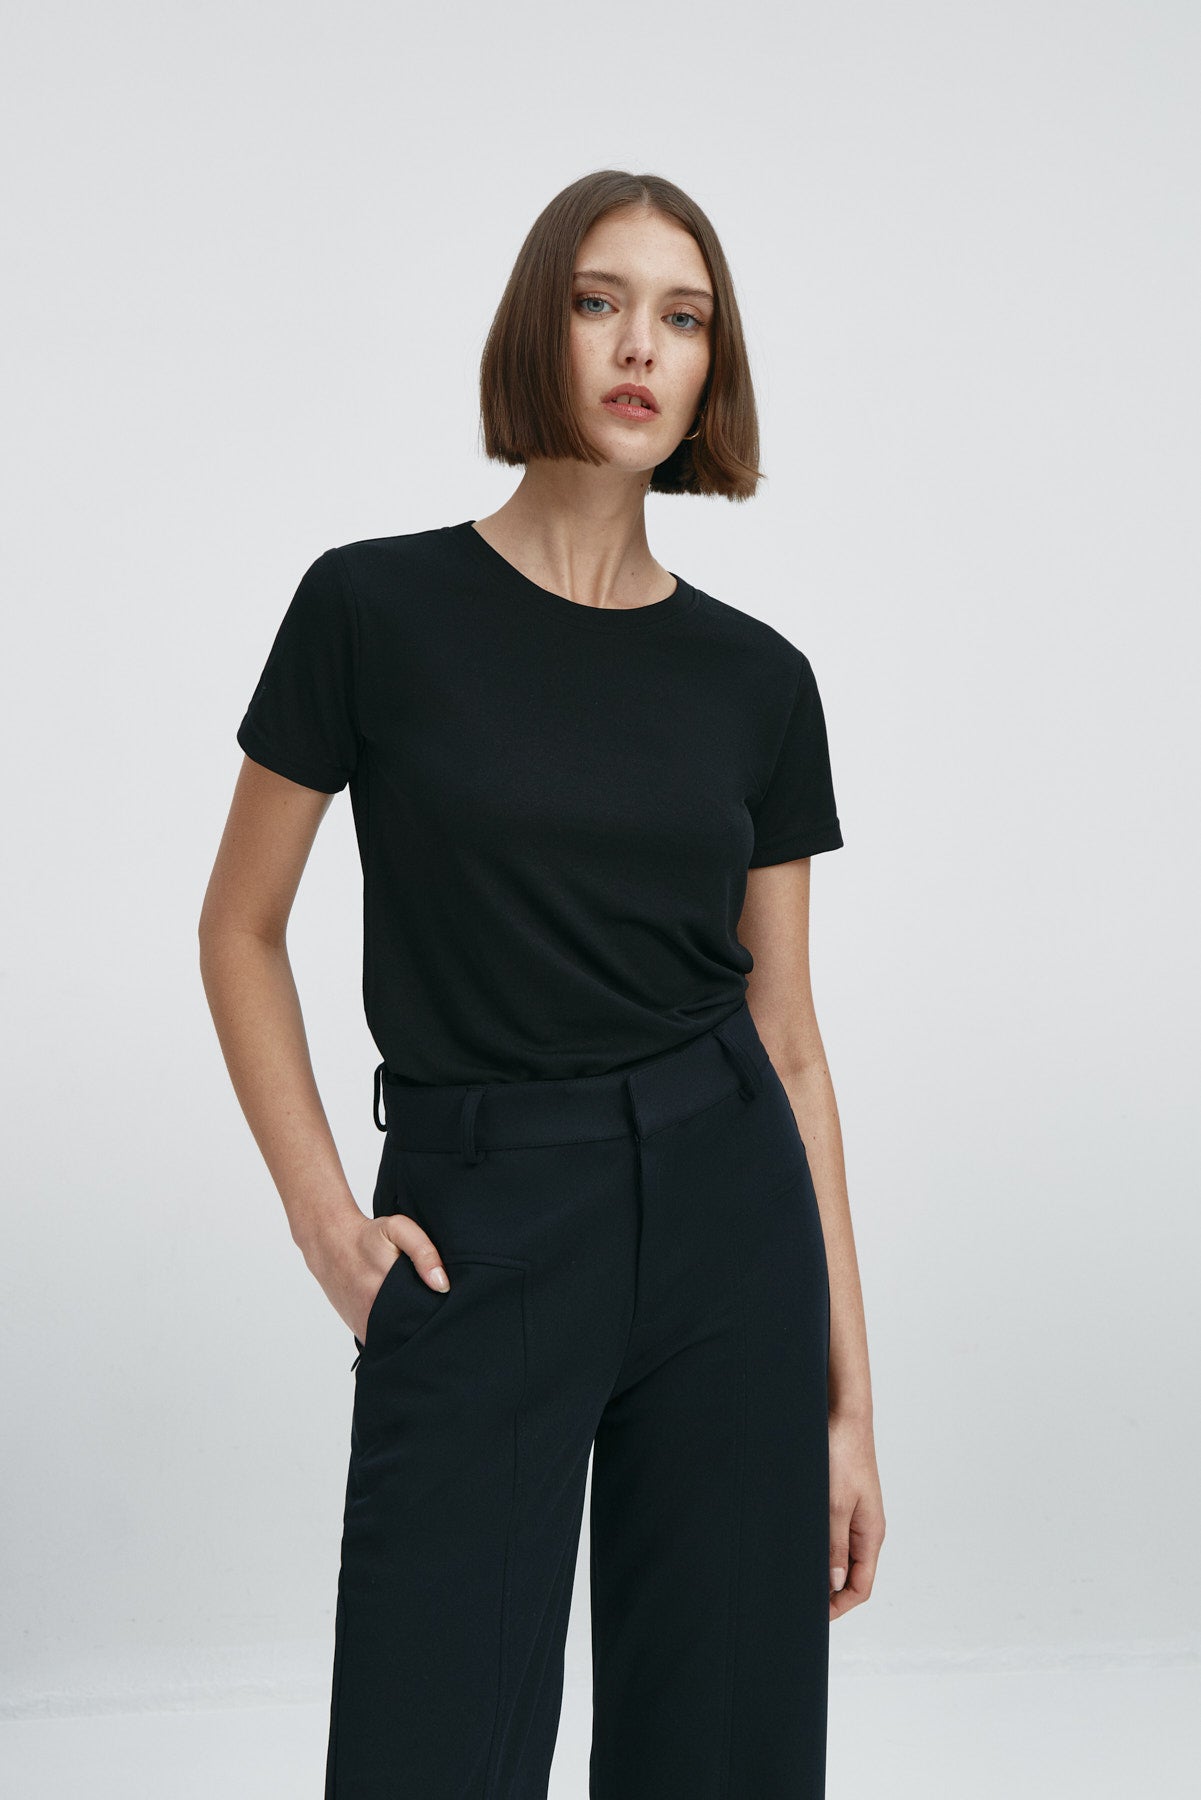 Camiseta básica para mujer en negro de Sepiia, fresca y resistente a manchas y arrugas. Foto frente